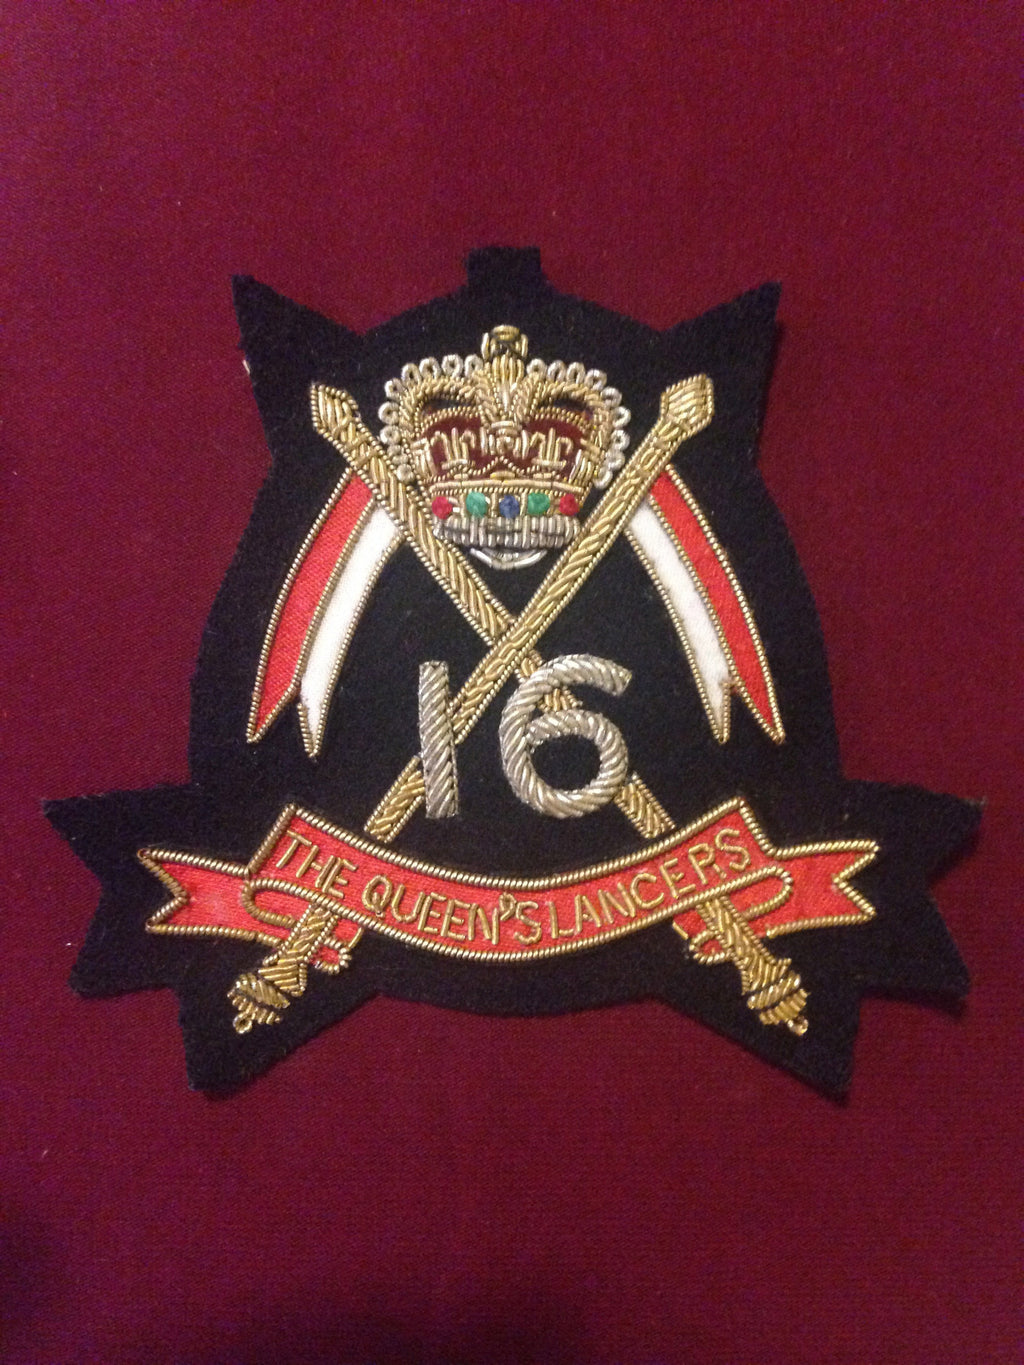 The 16 Queens Lancers Blazer Badge